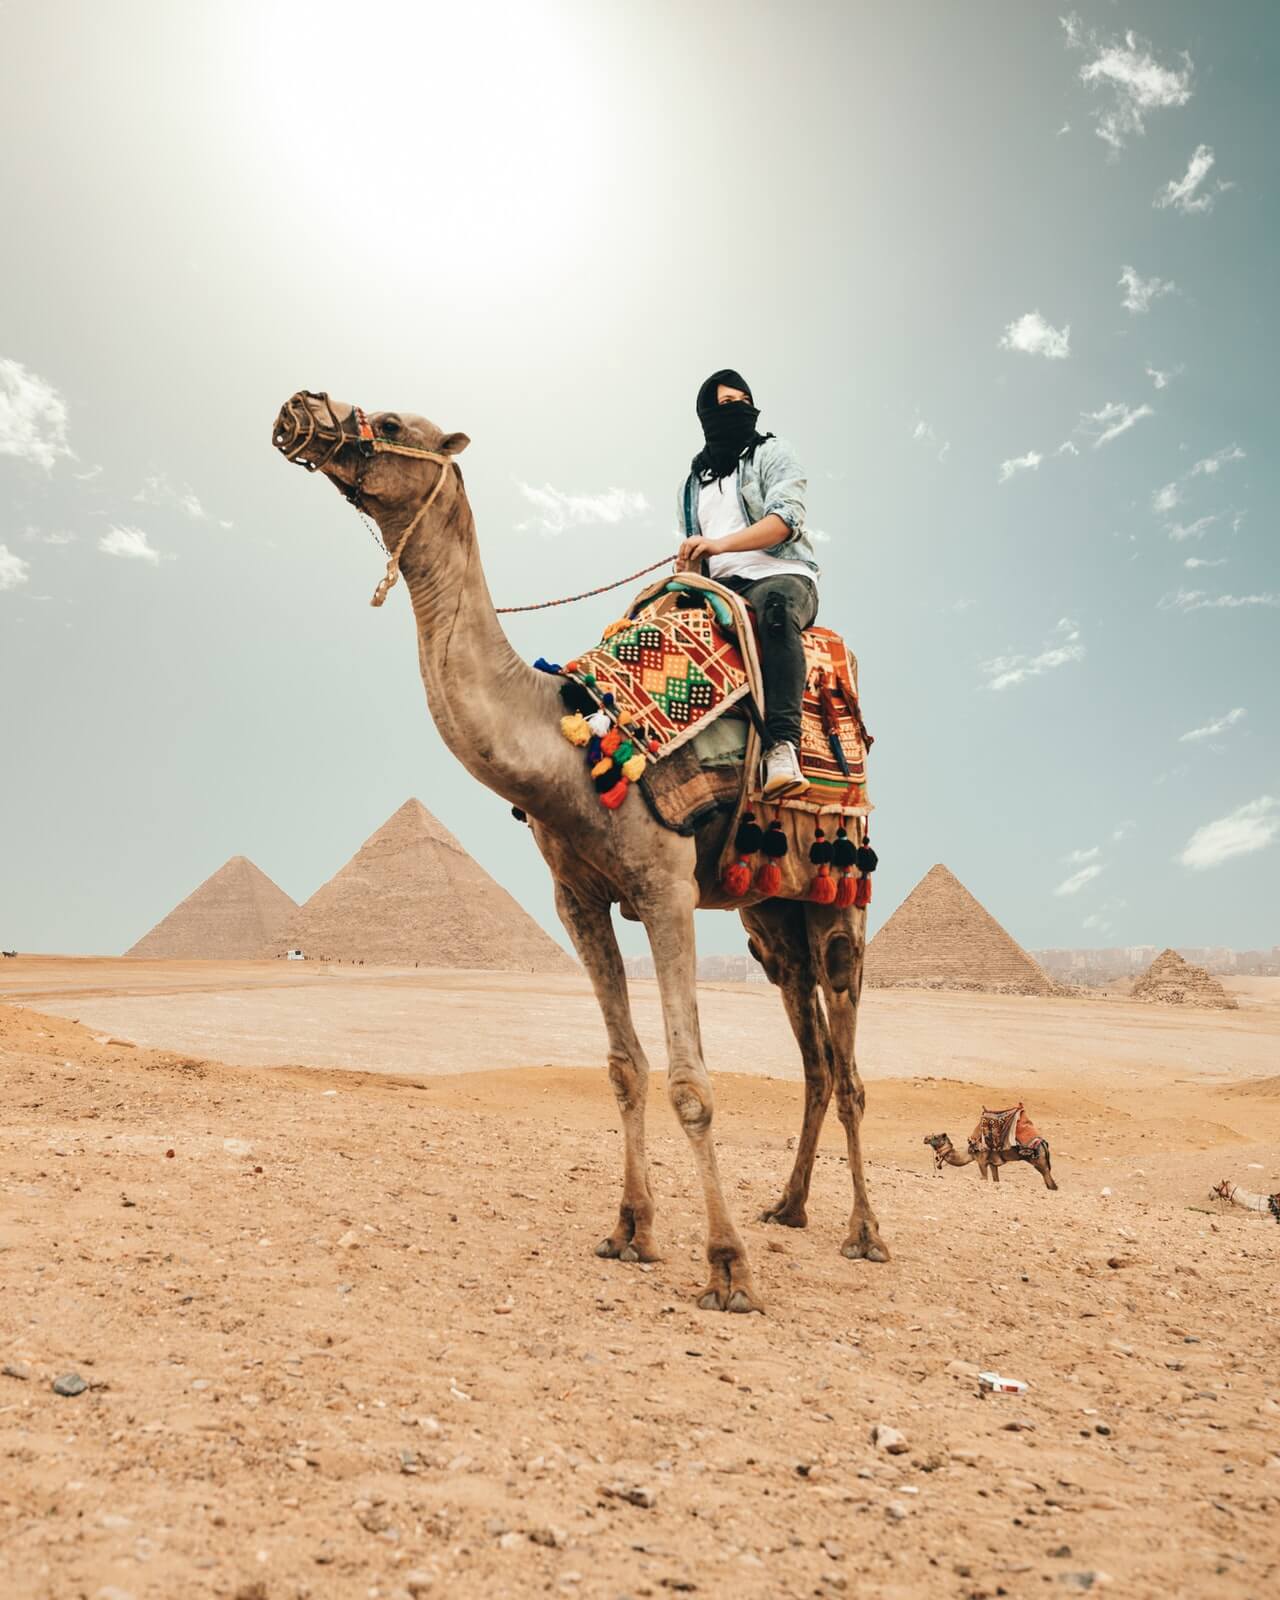 El arte, la belleza y el enigma de Egipto, InfoMistico.com